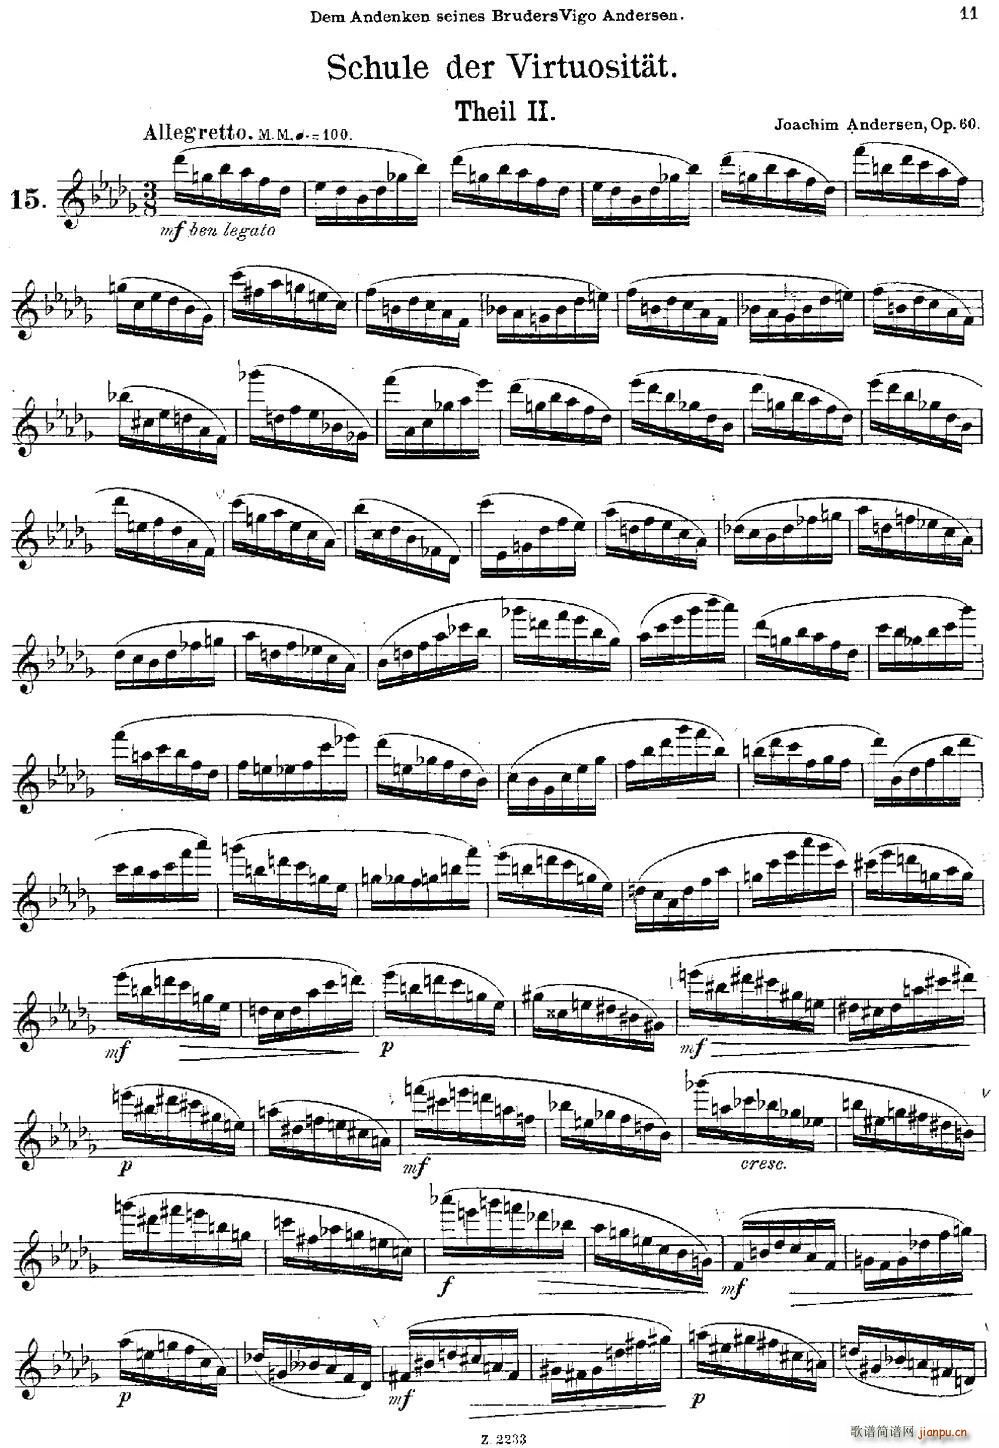 Schule der Virtuosit?t Op 60 15 长笛(笛箫谱)1